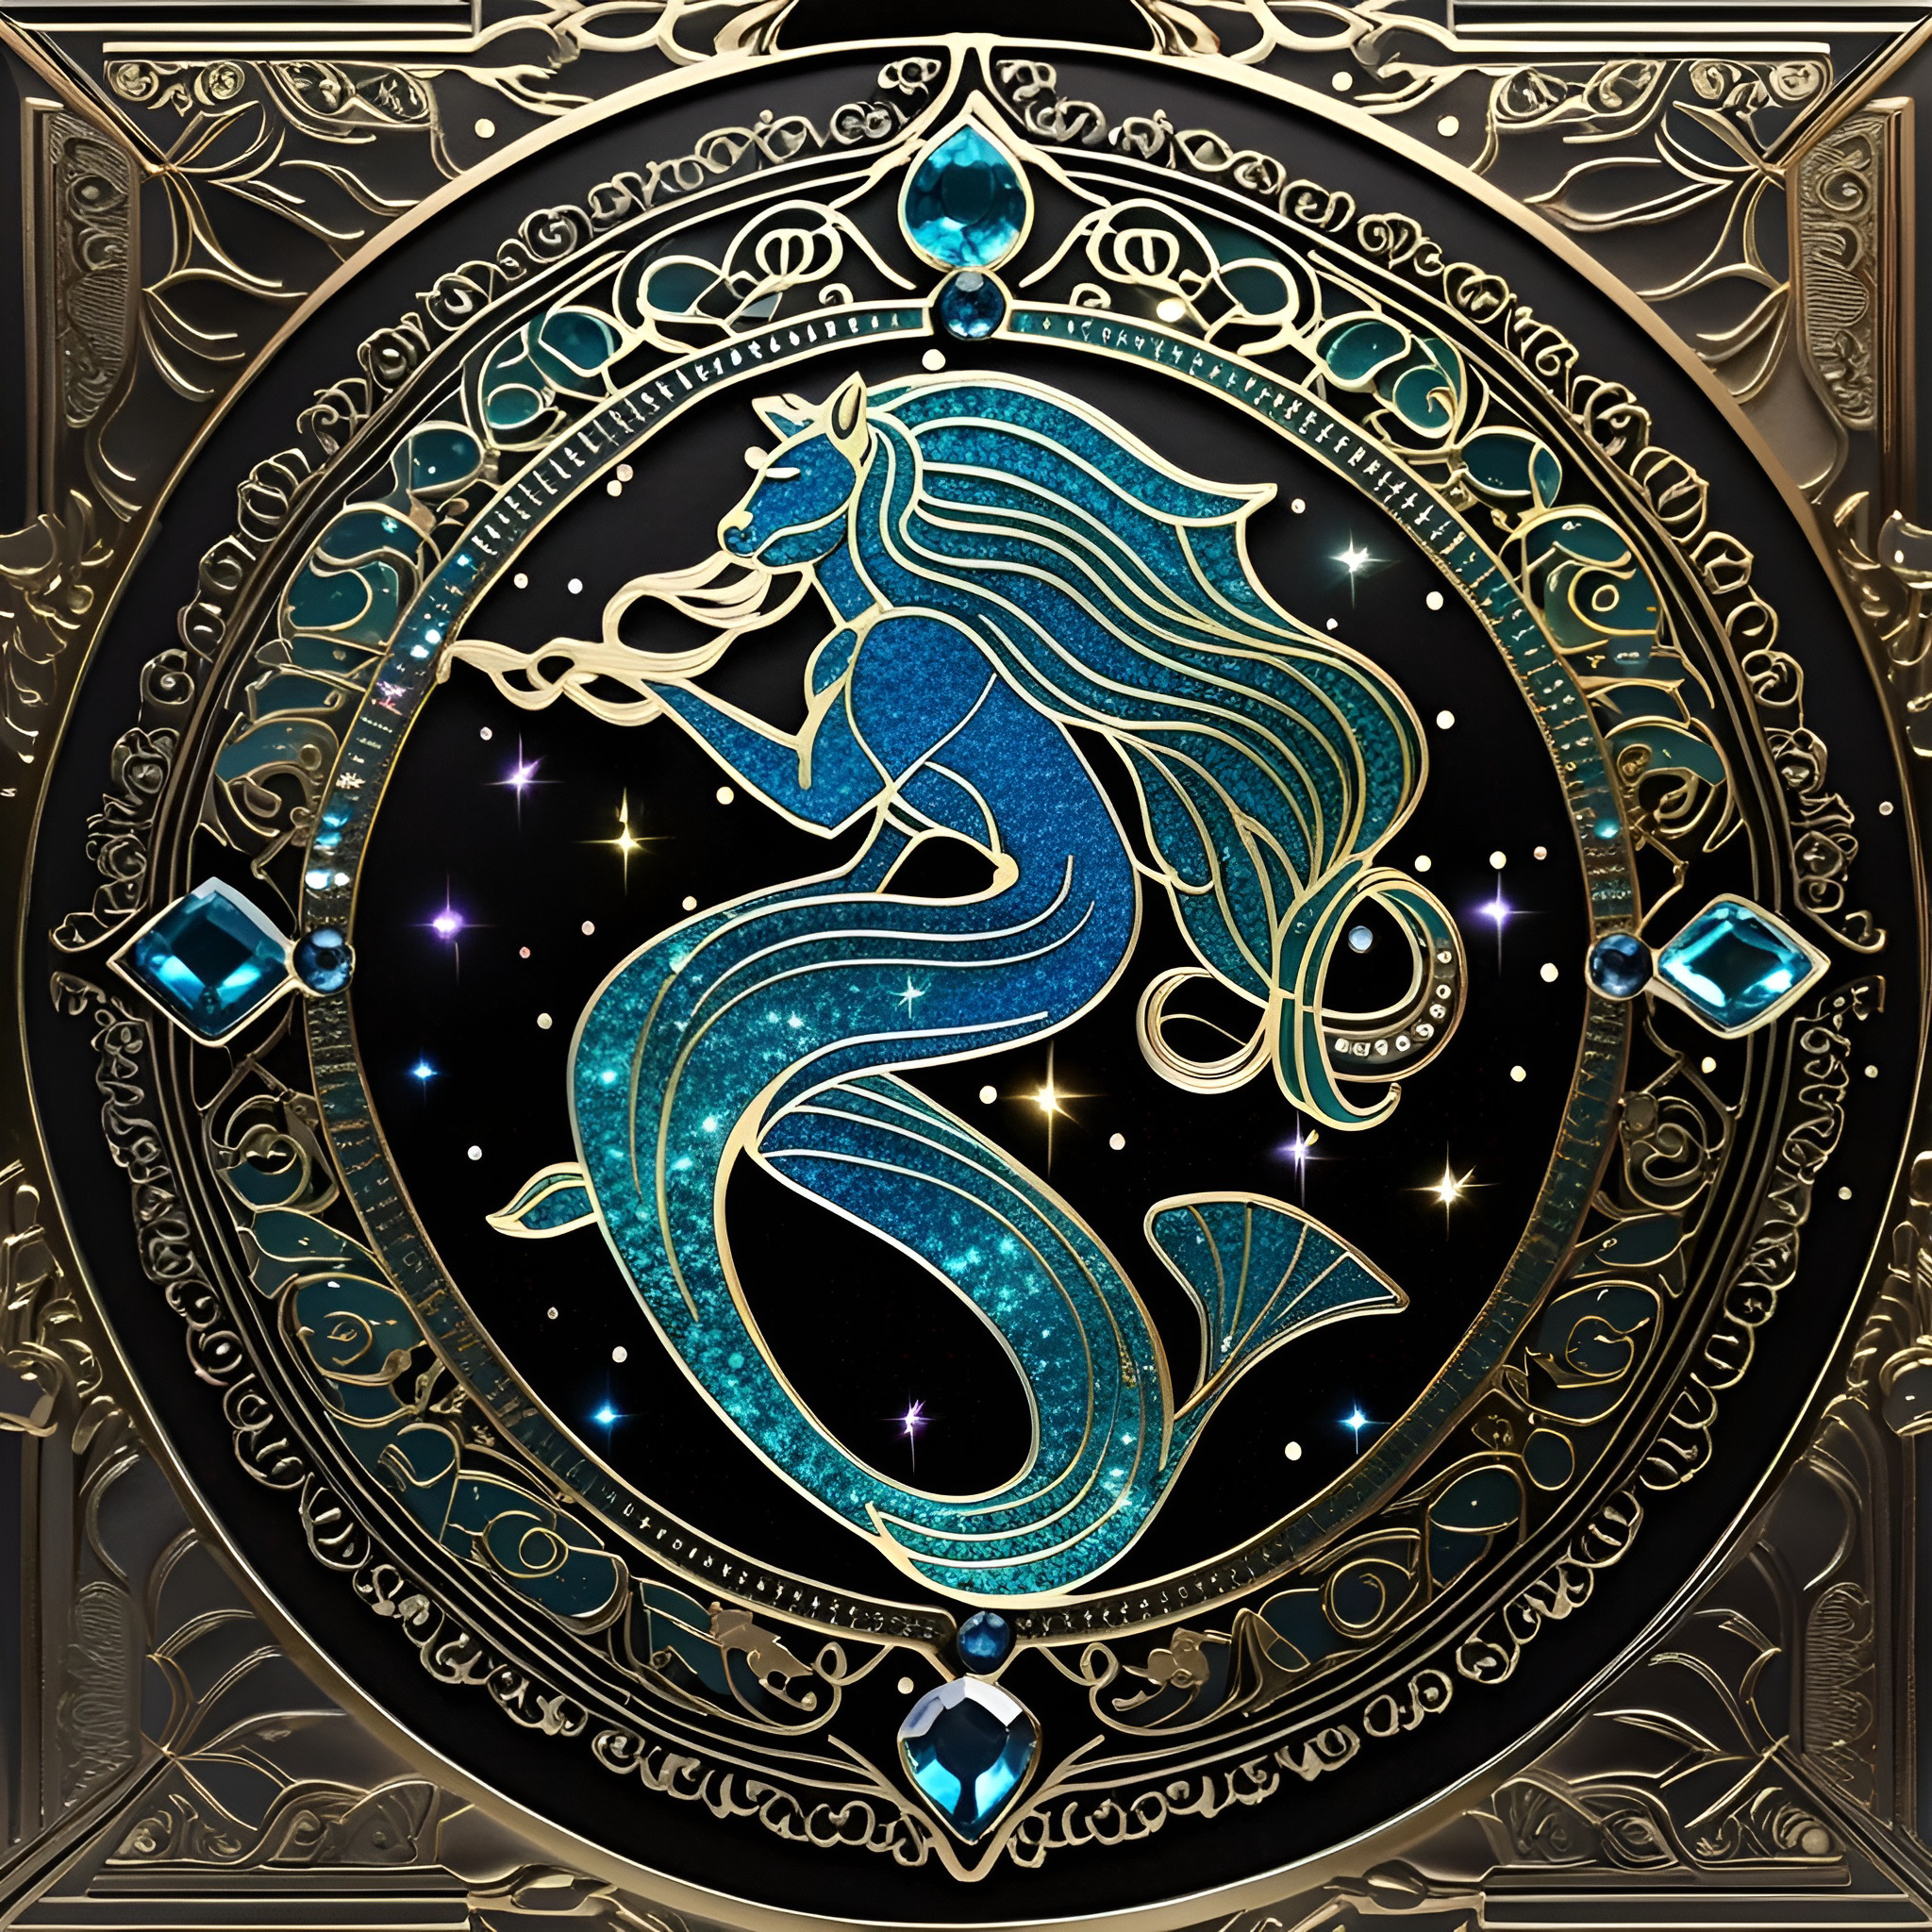 Crystal Magic: Aquarius’ Celestial Connection